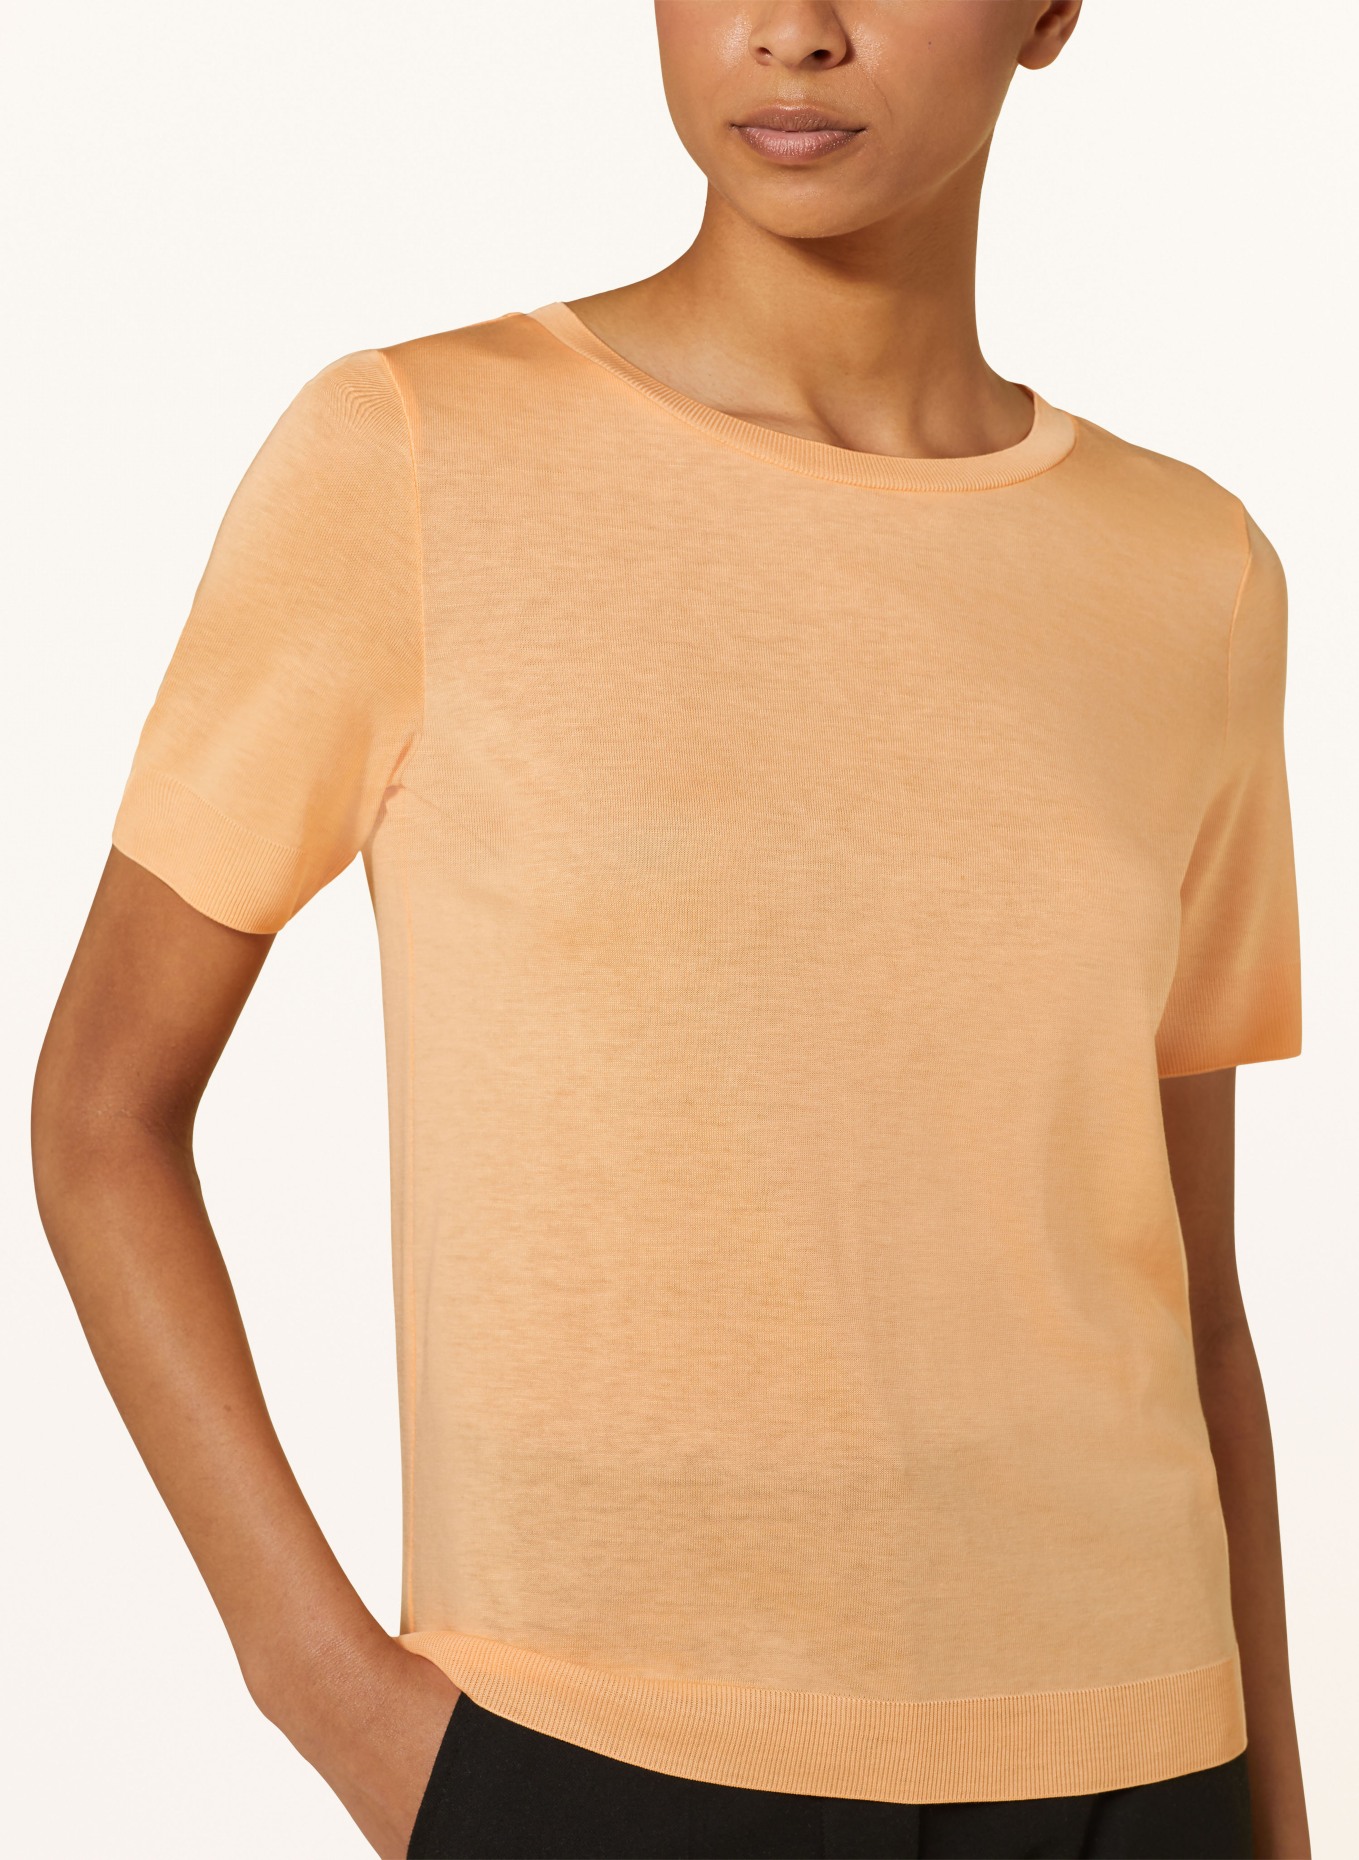 comma Knit shirt, Color: ORANGE (Image 4)